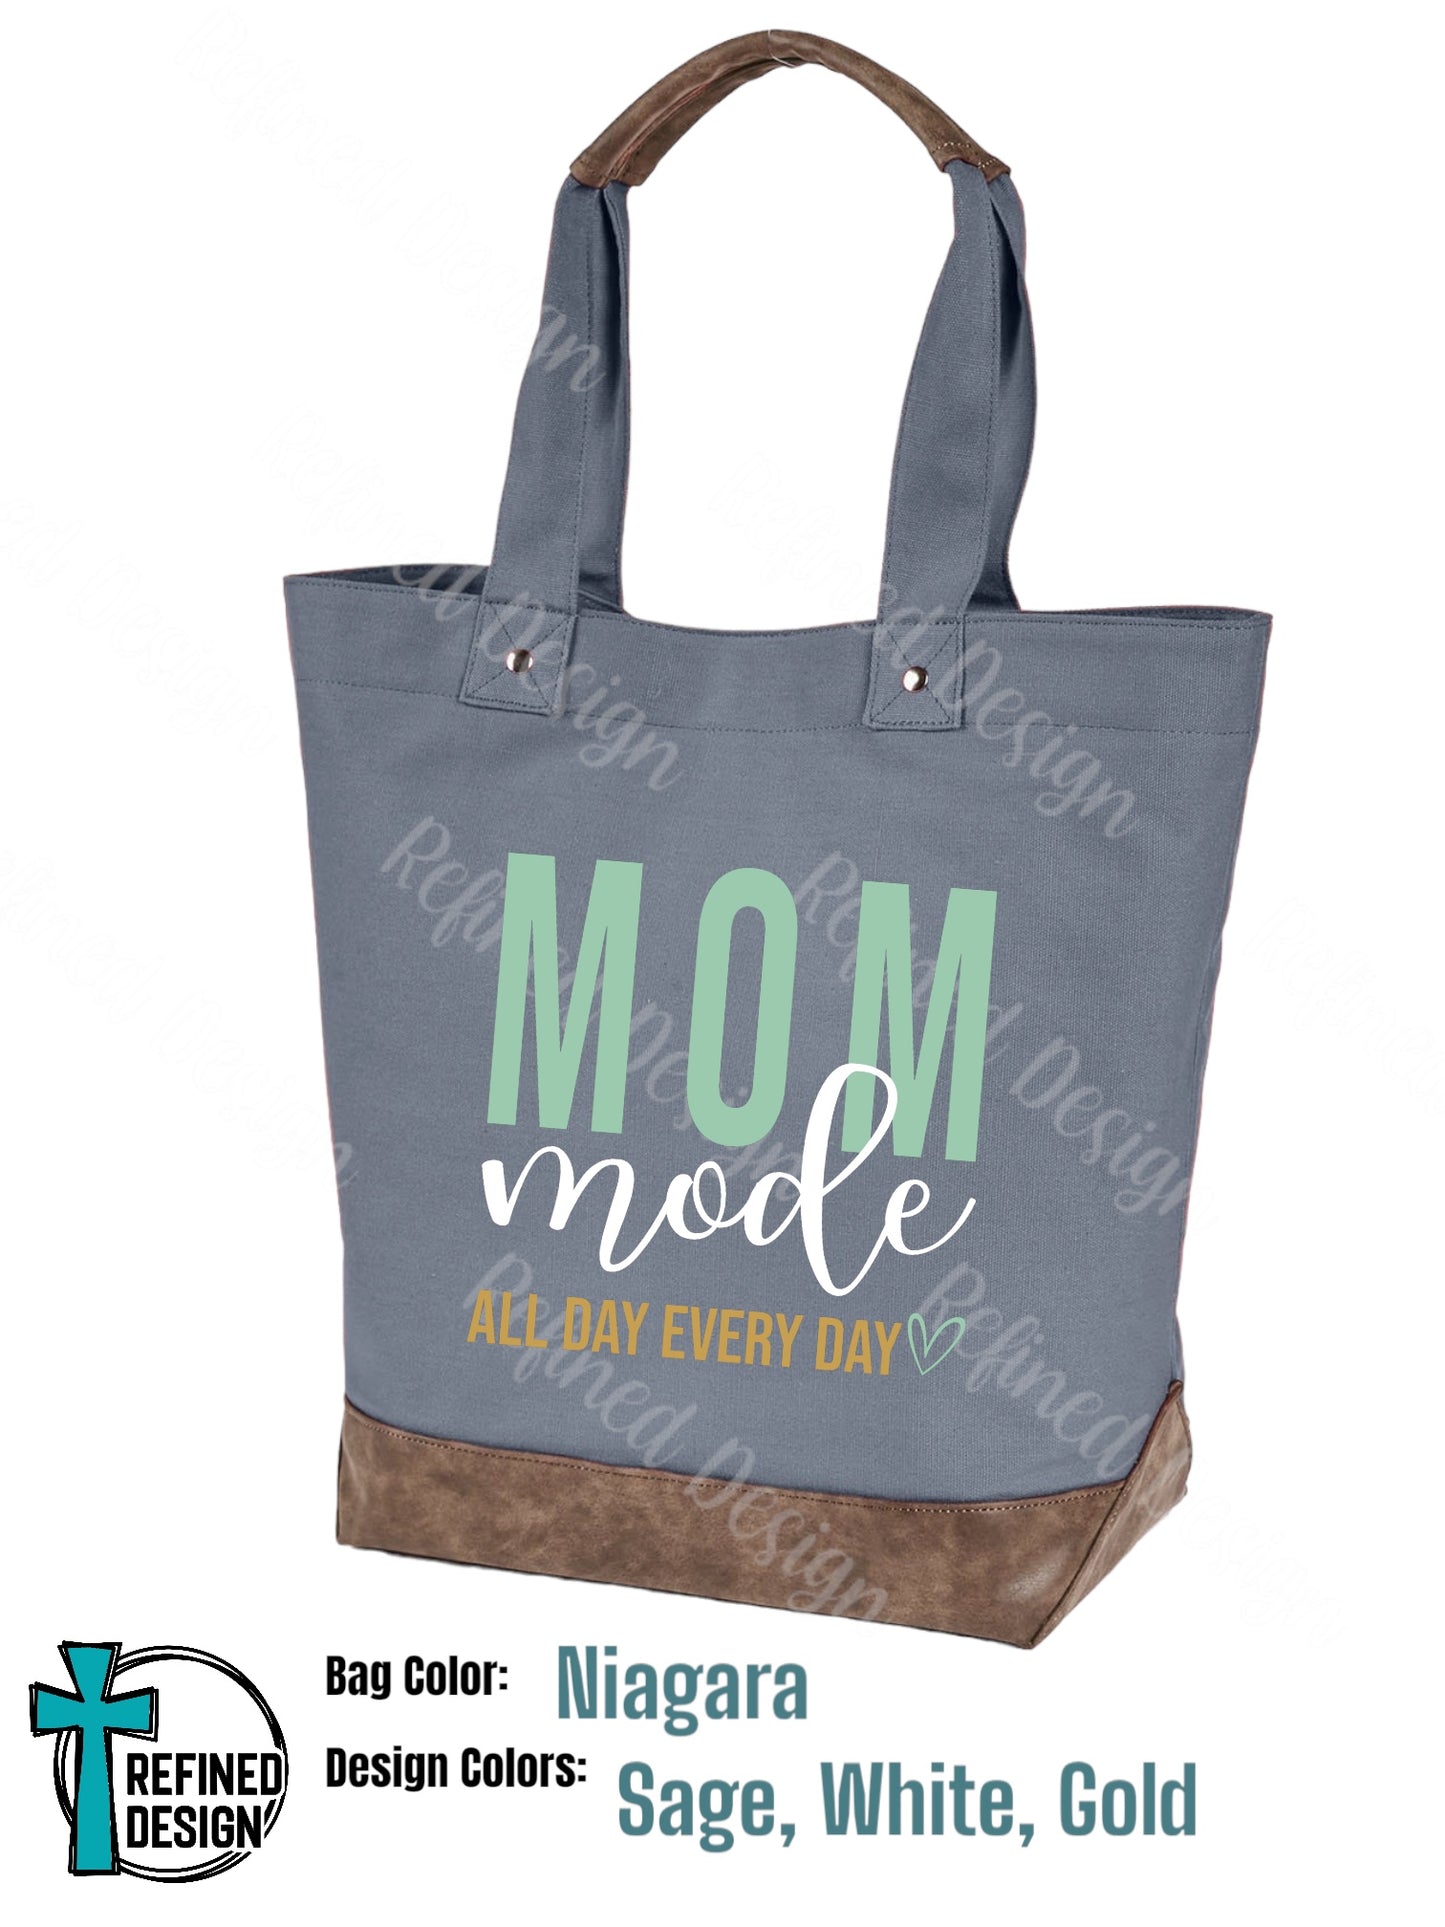 “Mom Mode” Resort Tote Bag